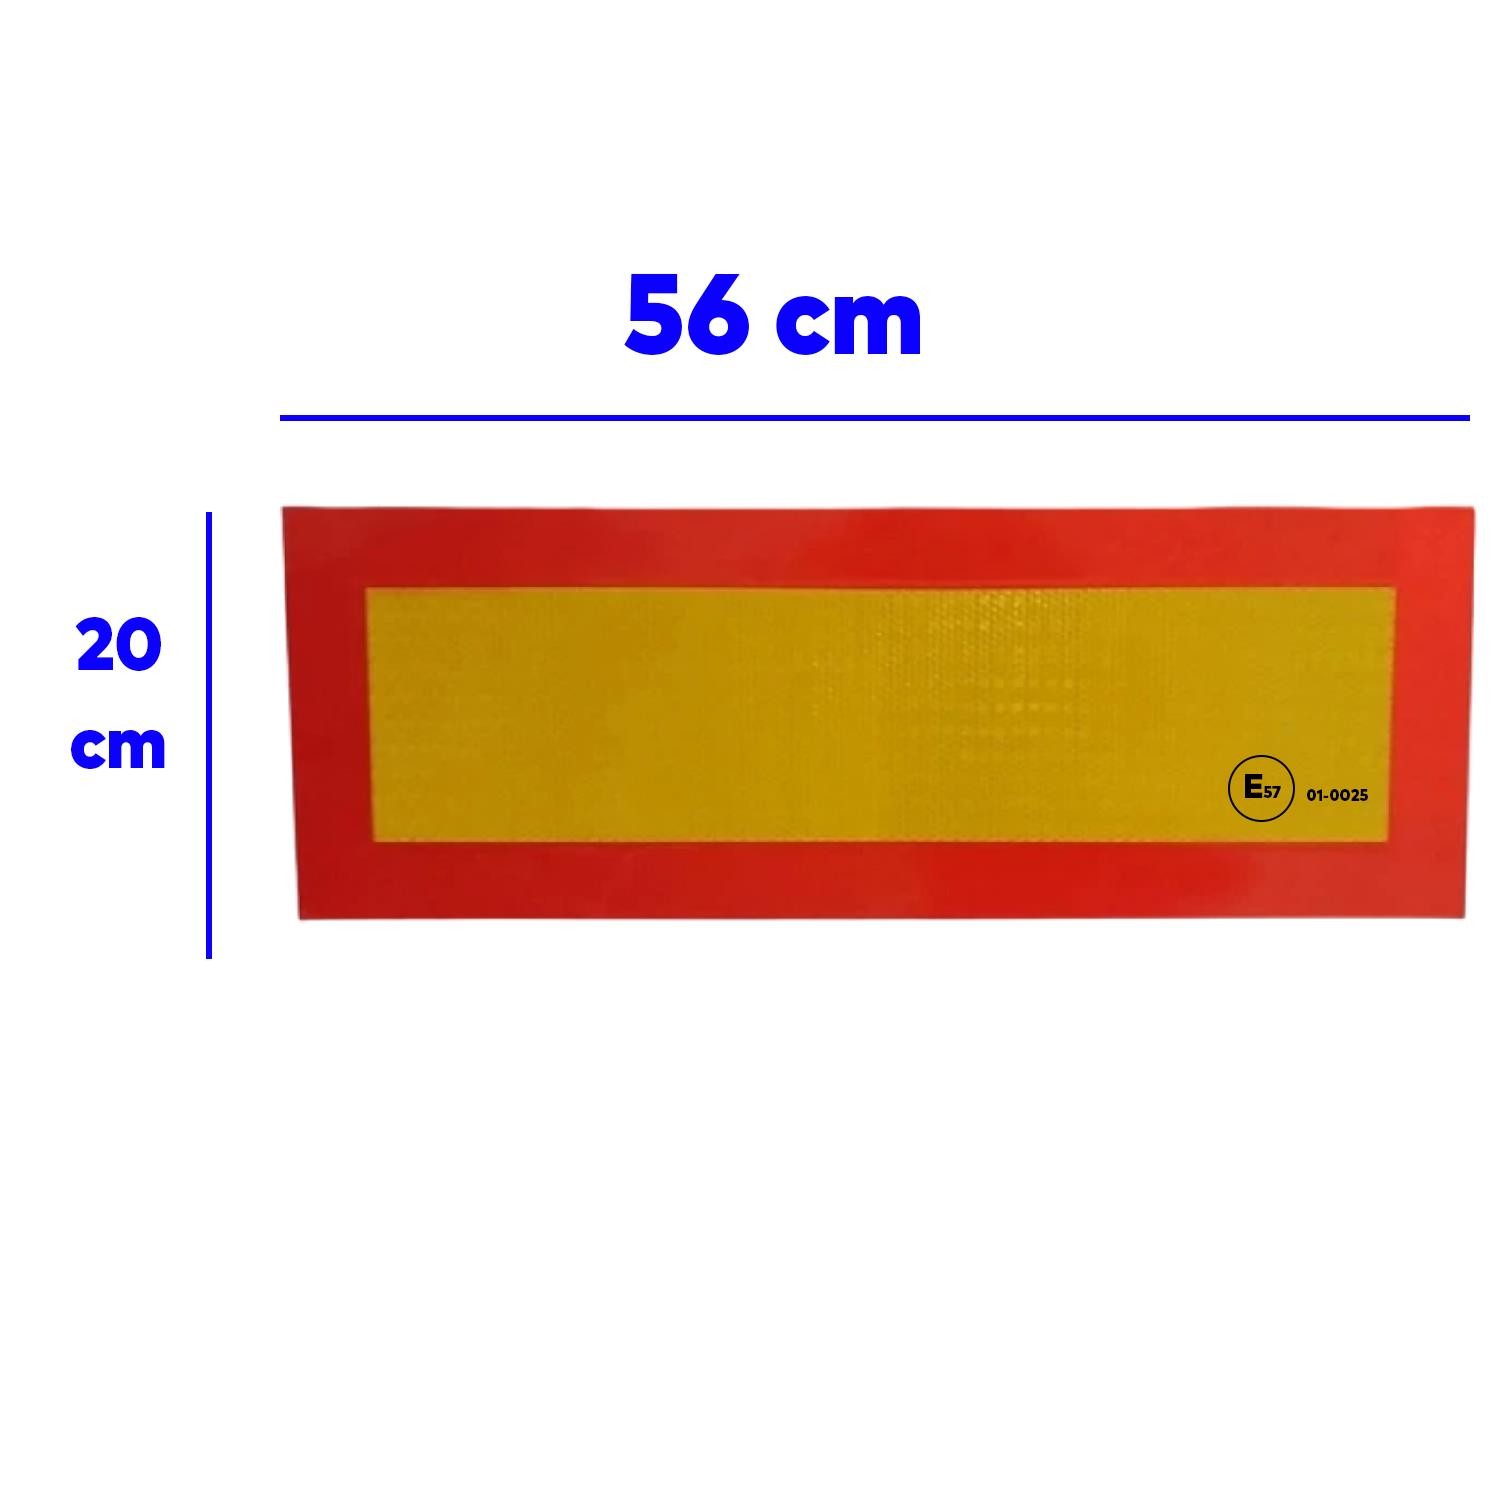 Tüvtürk Uyumlu E57 Reflektörlü Fosforlu Tır Kamyon Dorse Çekici Arkası BANT 20 cm x 56.5 cm 1 ÇİFT